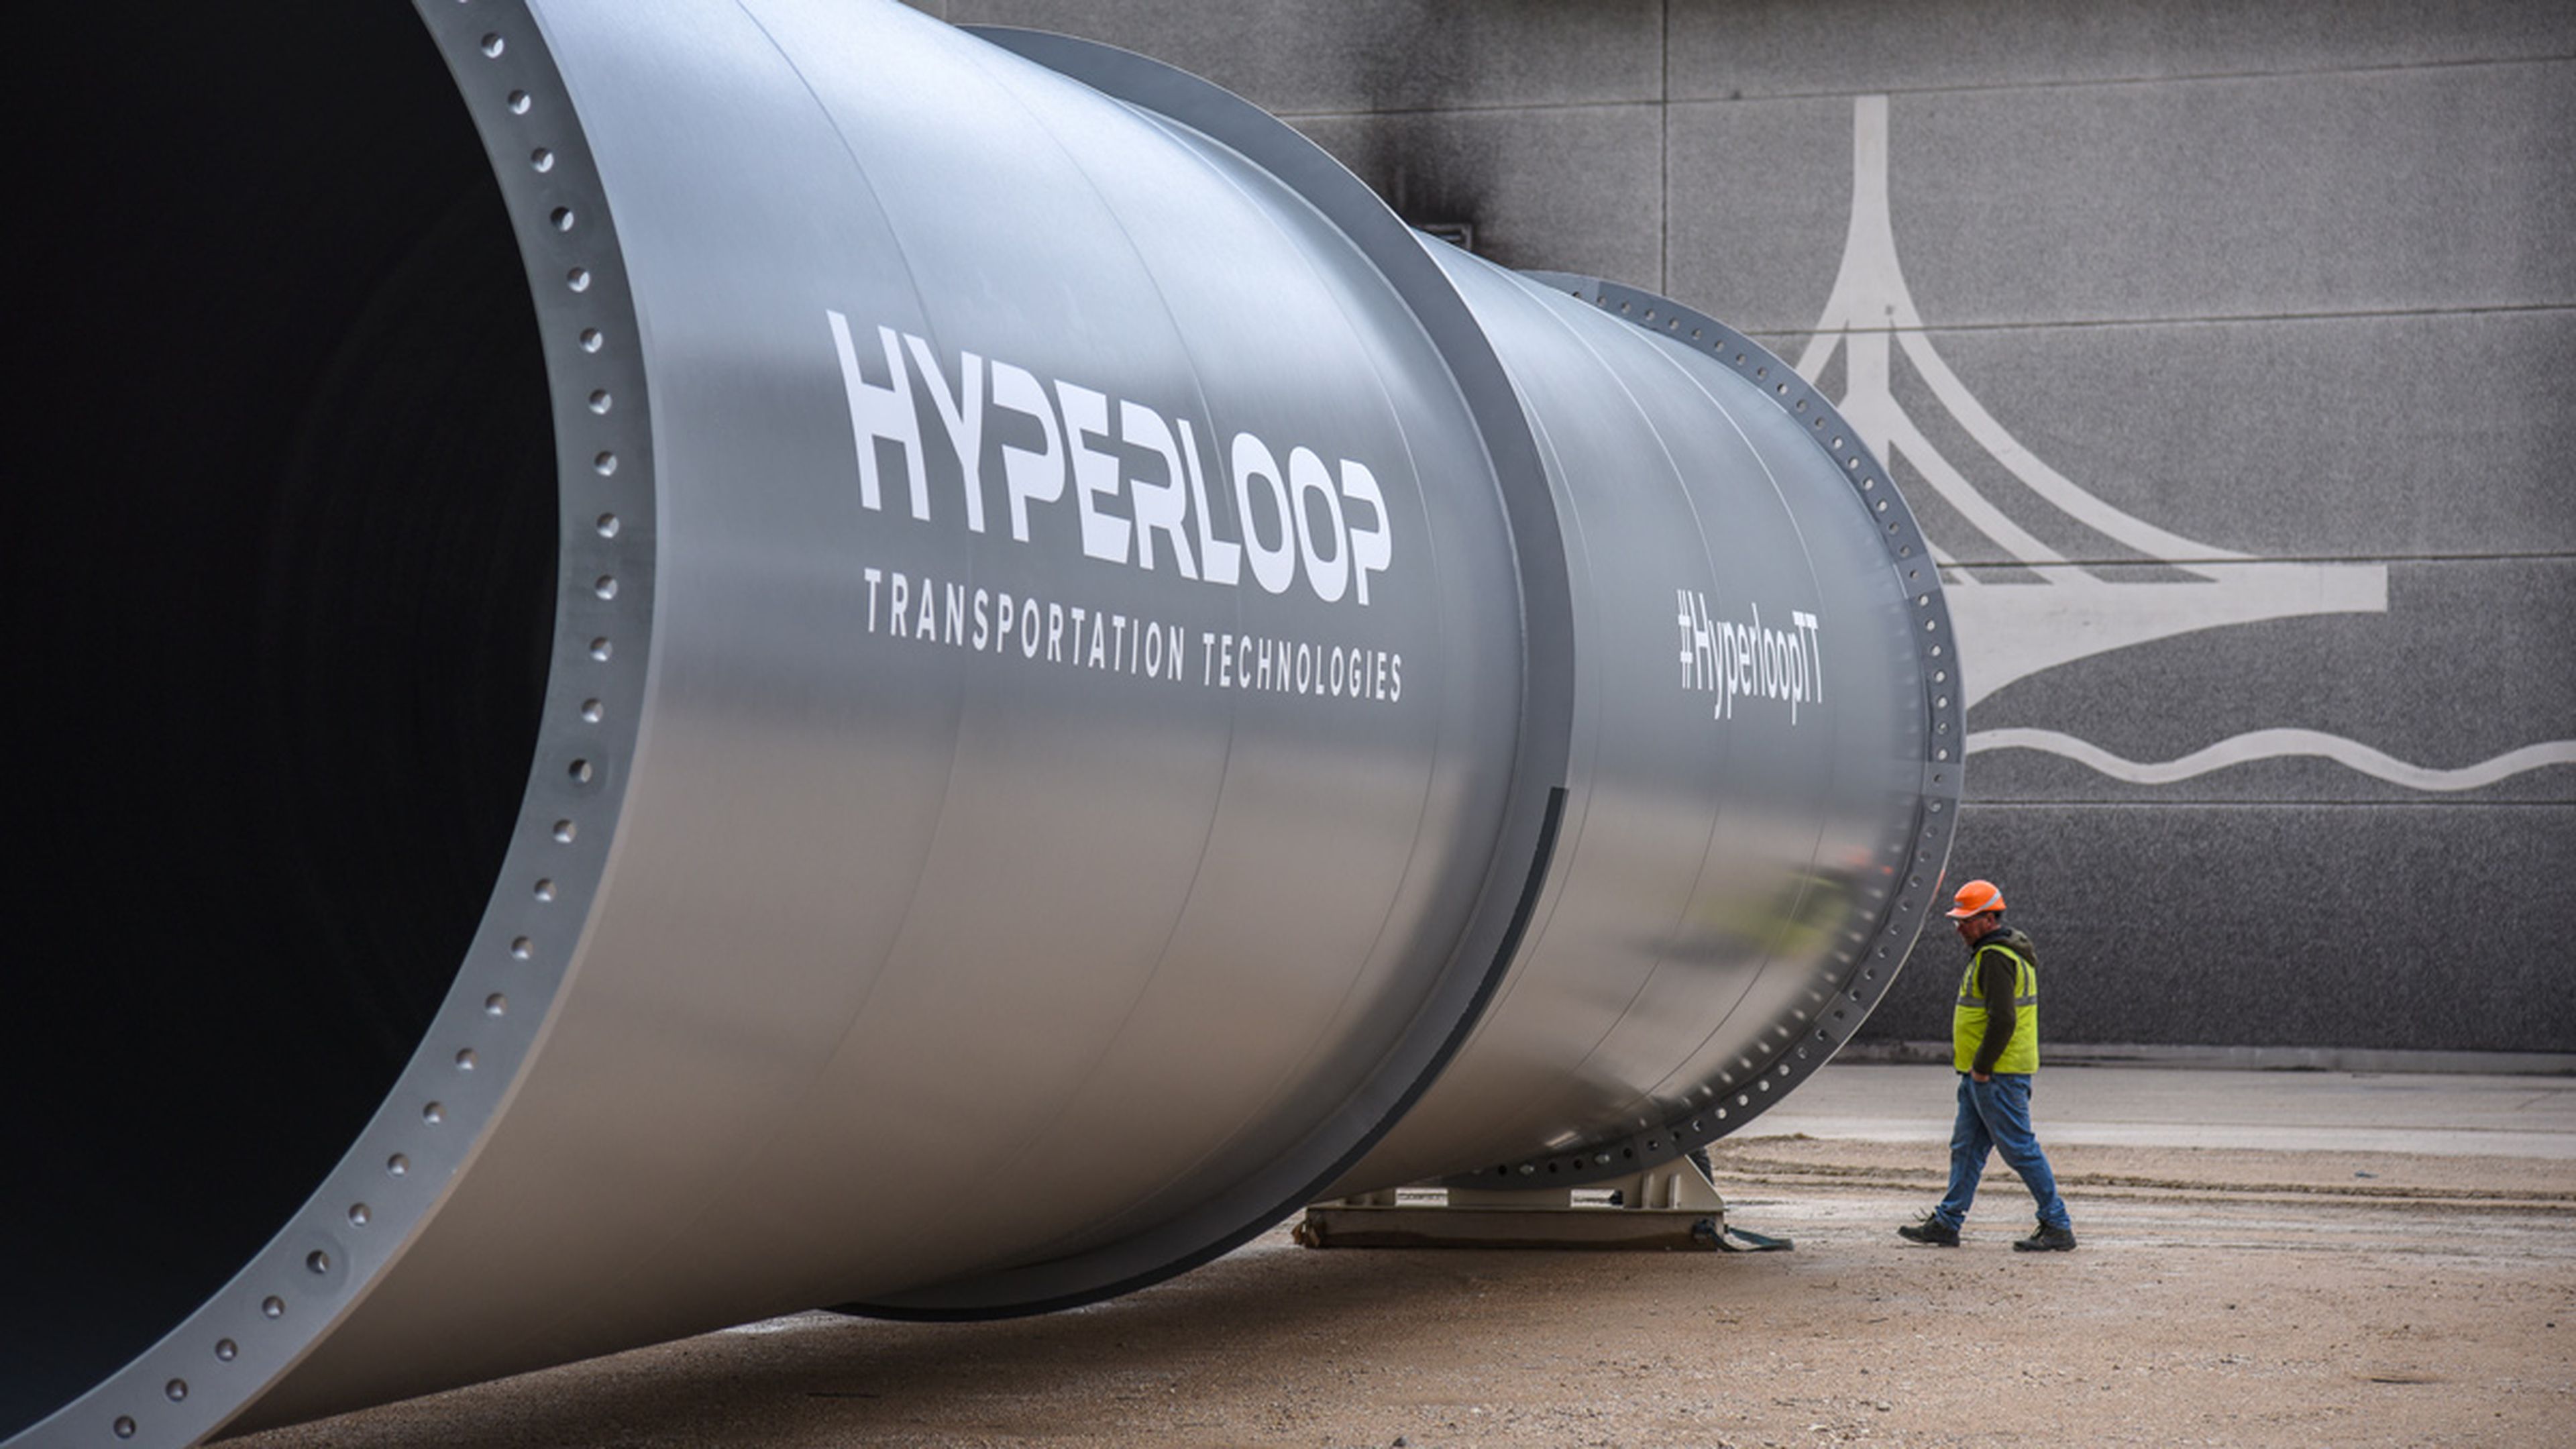 El primer Hyperloop comercial se fabrica en España